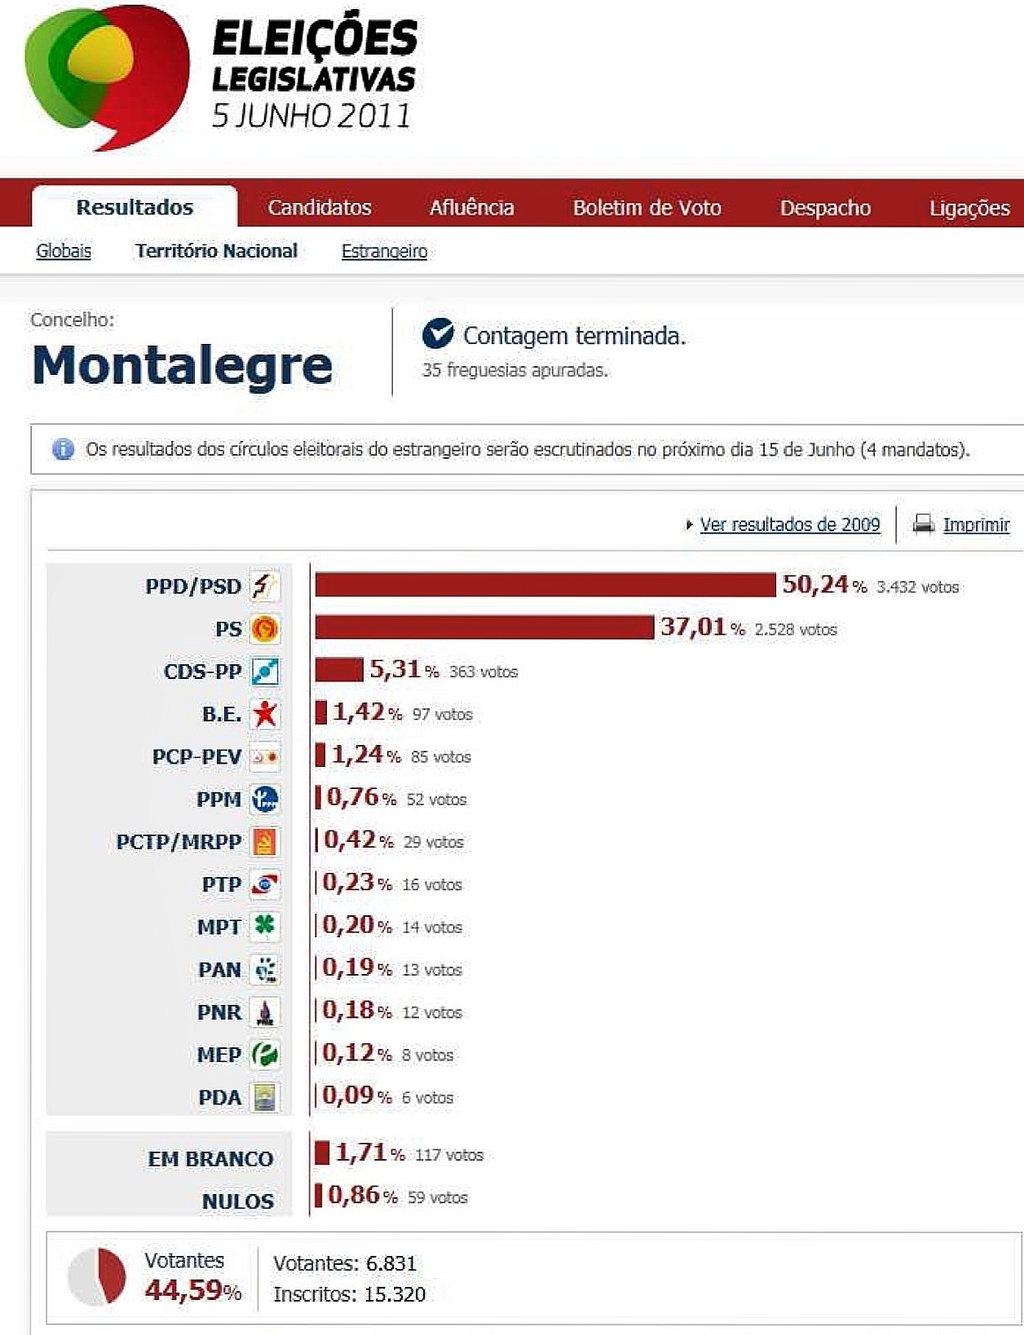 MONTALEGRE - Eleições Legislativas 2011